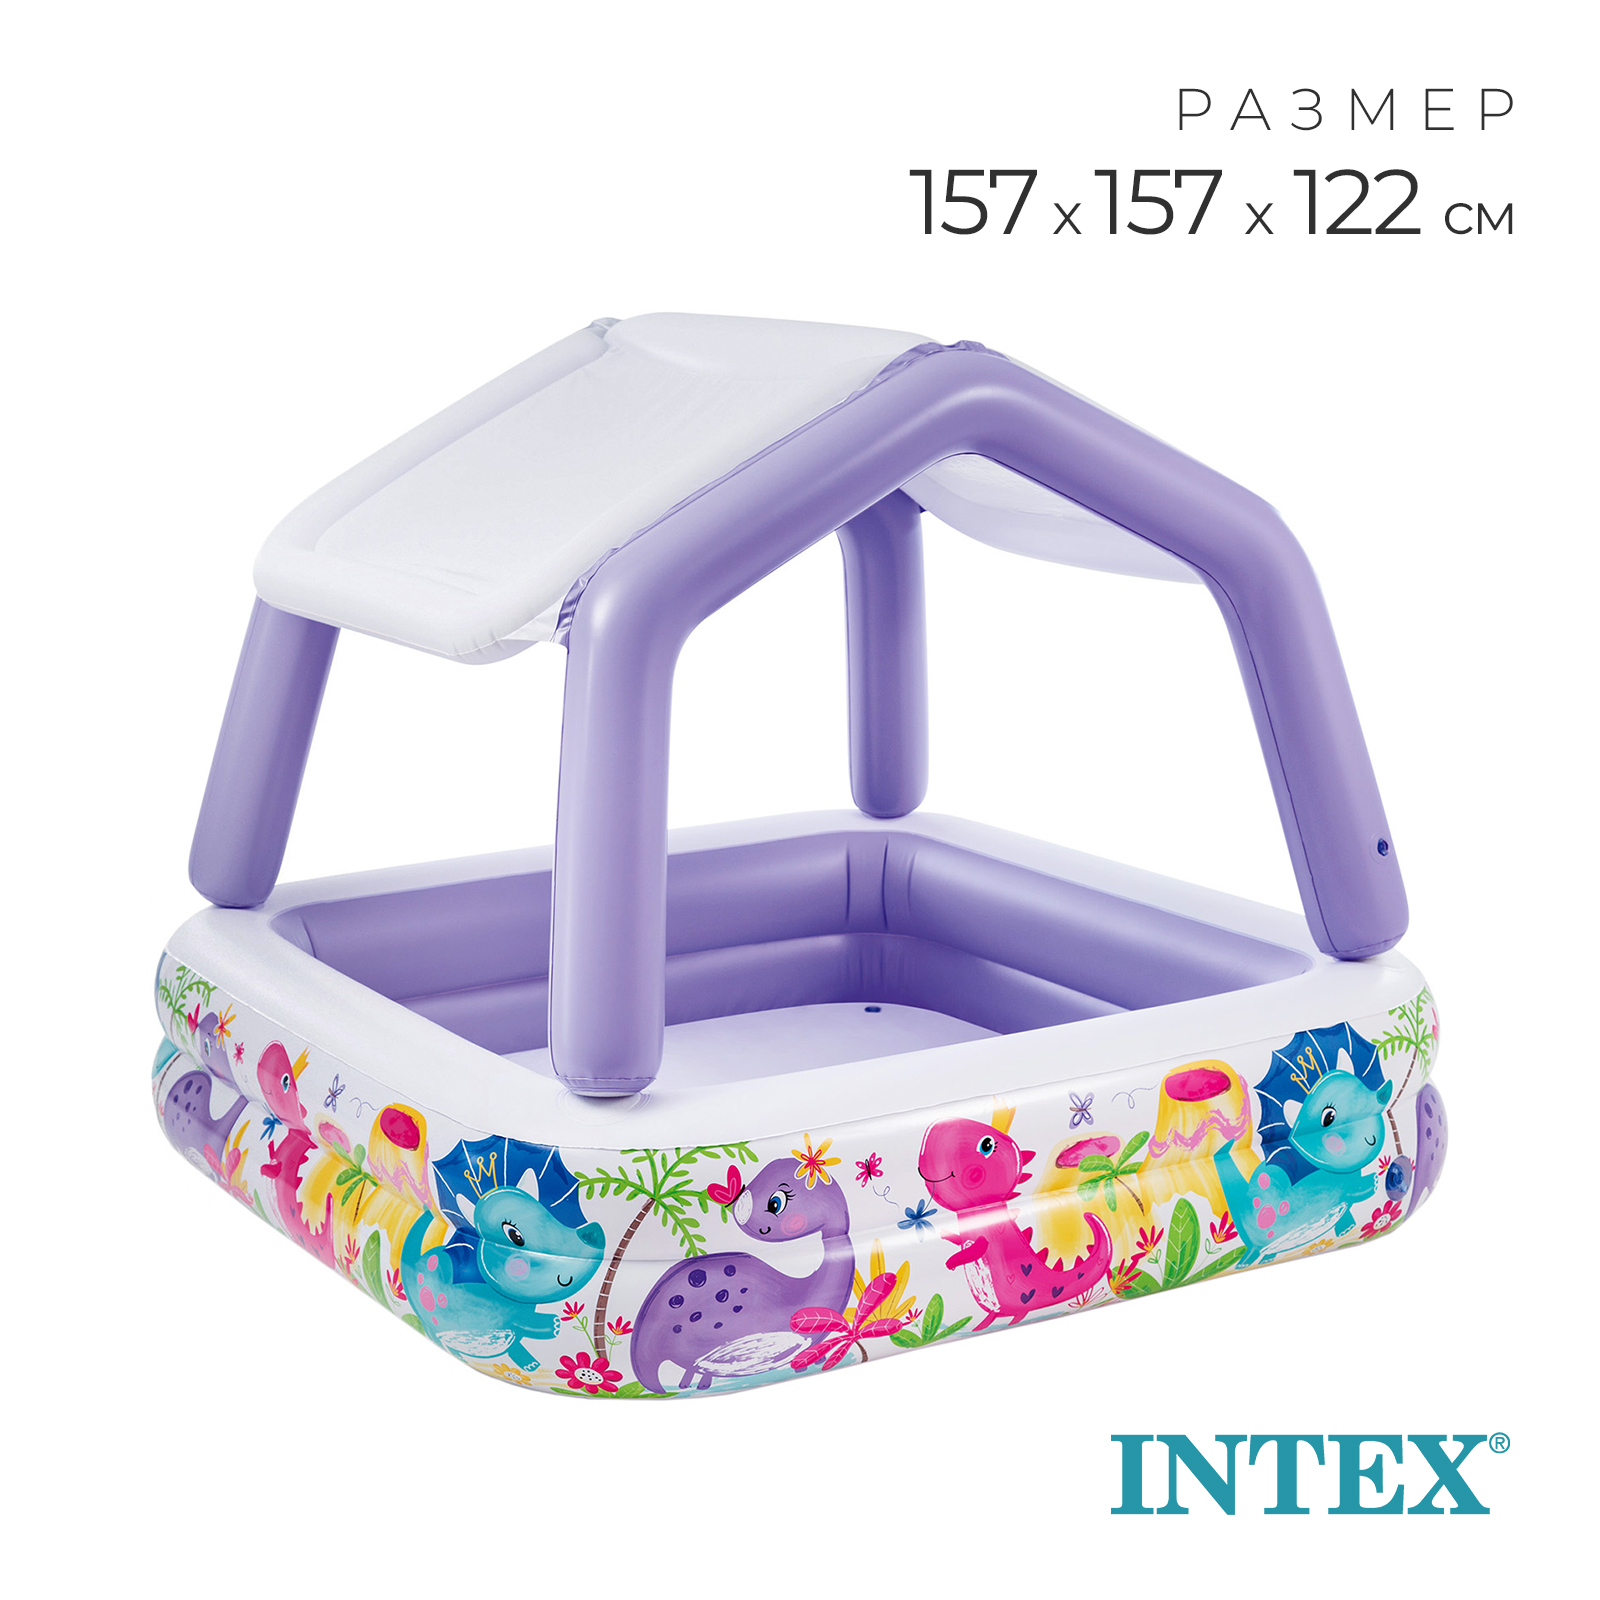 Бассейн надувной Intex детский «Домик» 157 х 157 х 122 см с навесом - фото 1